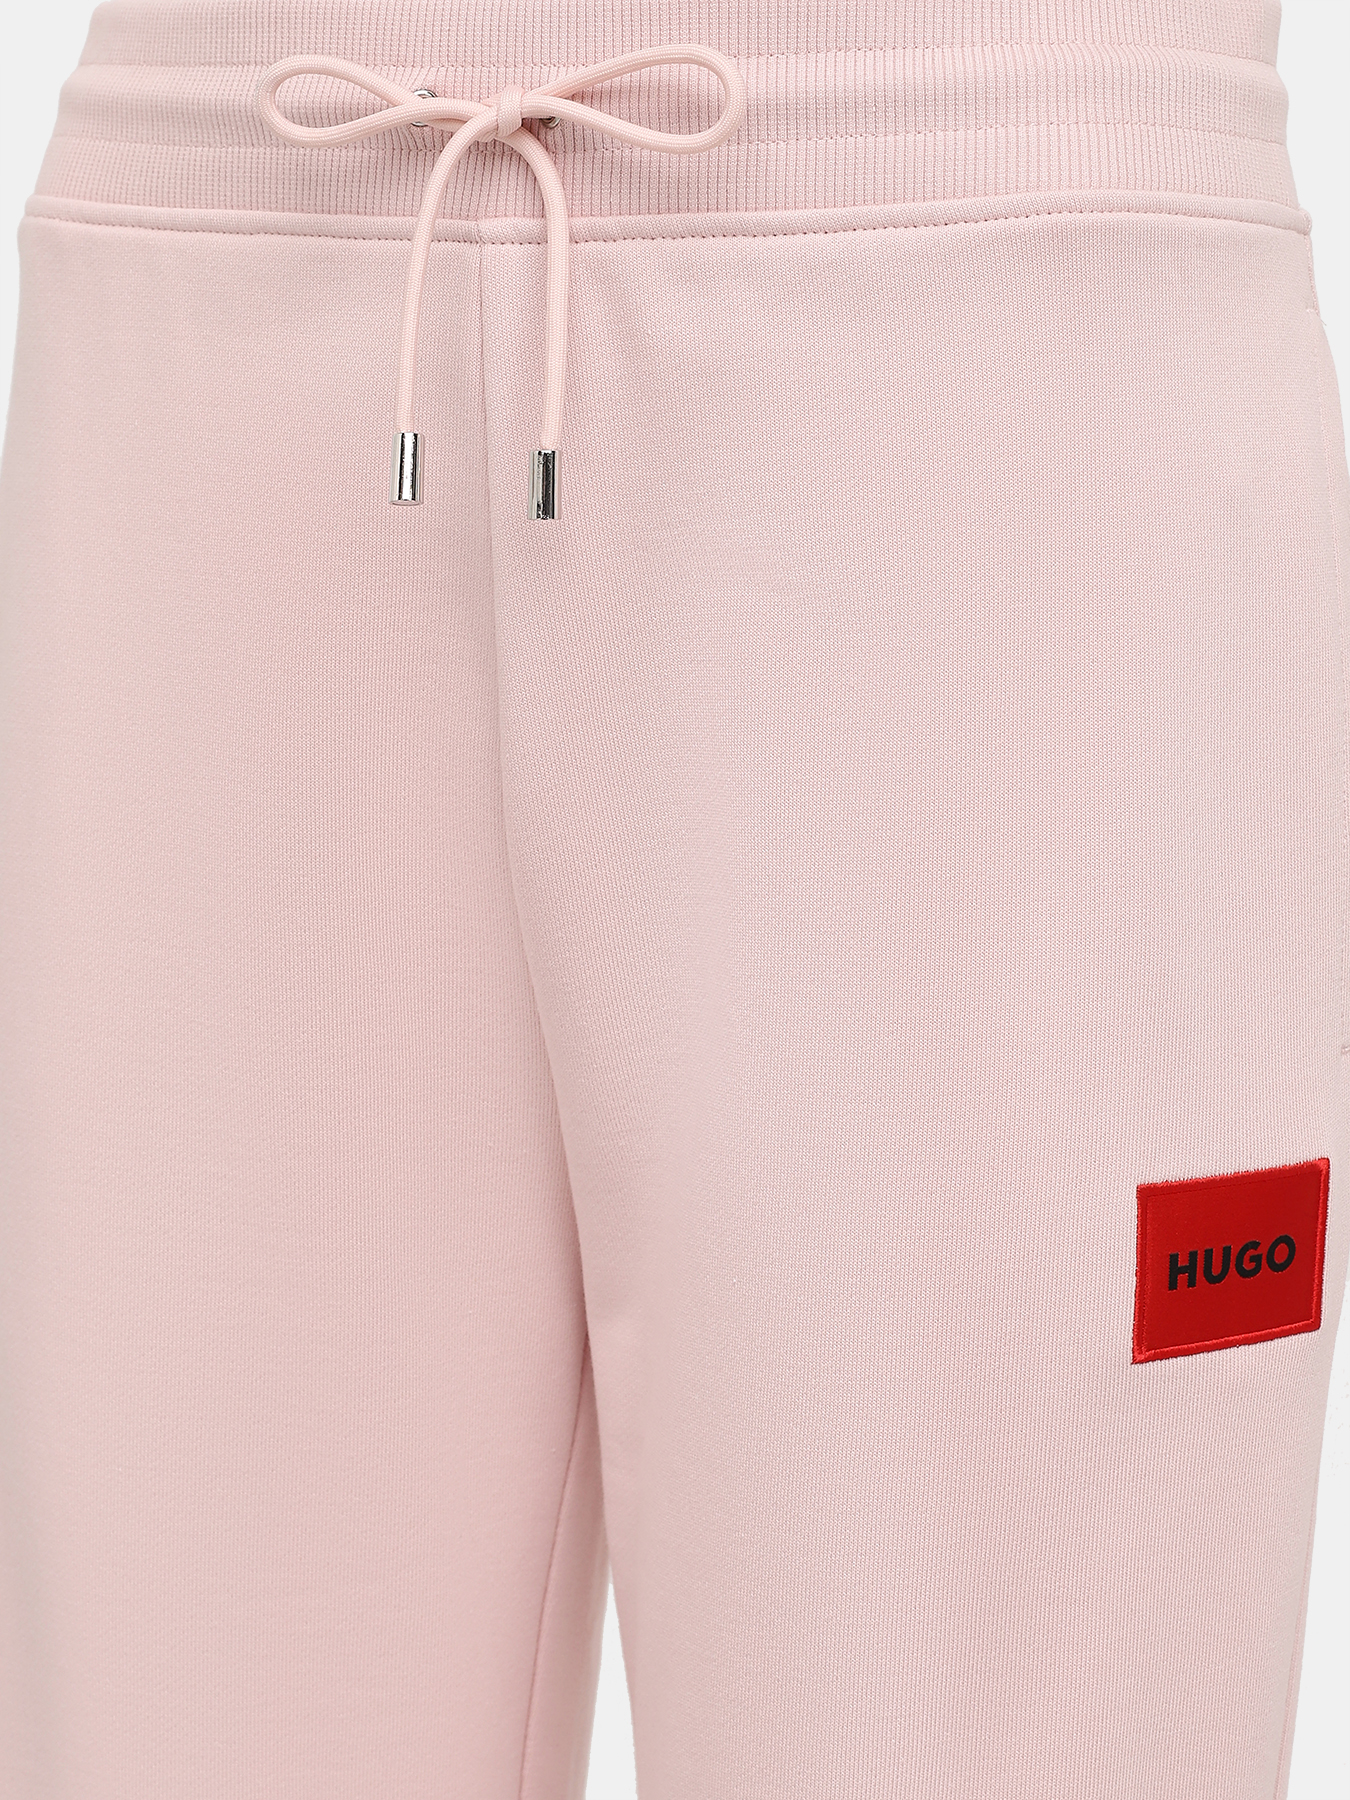 Спортивные брюки Dachibi redlabel HUGO 420594-041, цвет розовый, размер 40-42 - фото 2